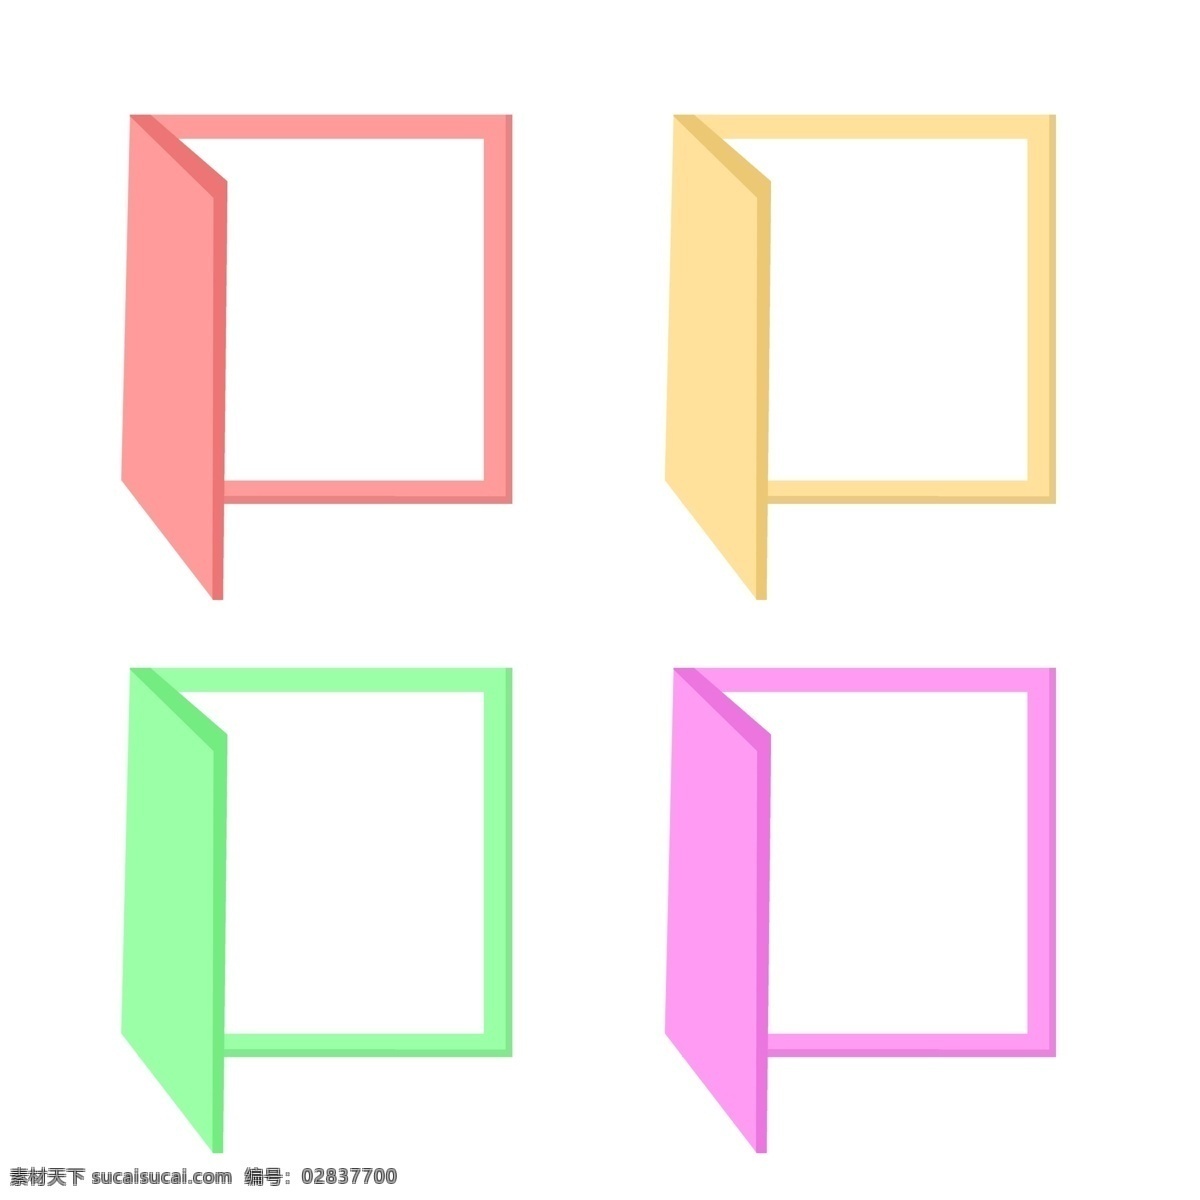 立体 方形 导航 装饰 立体方形 多种色彩 目录 ppt目录